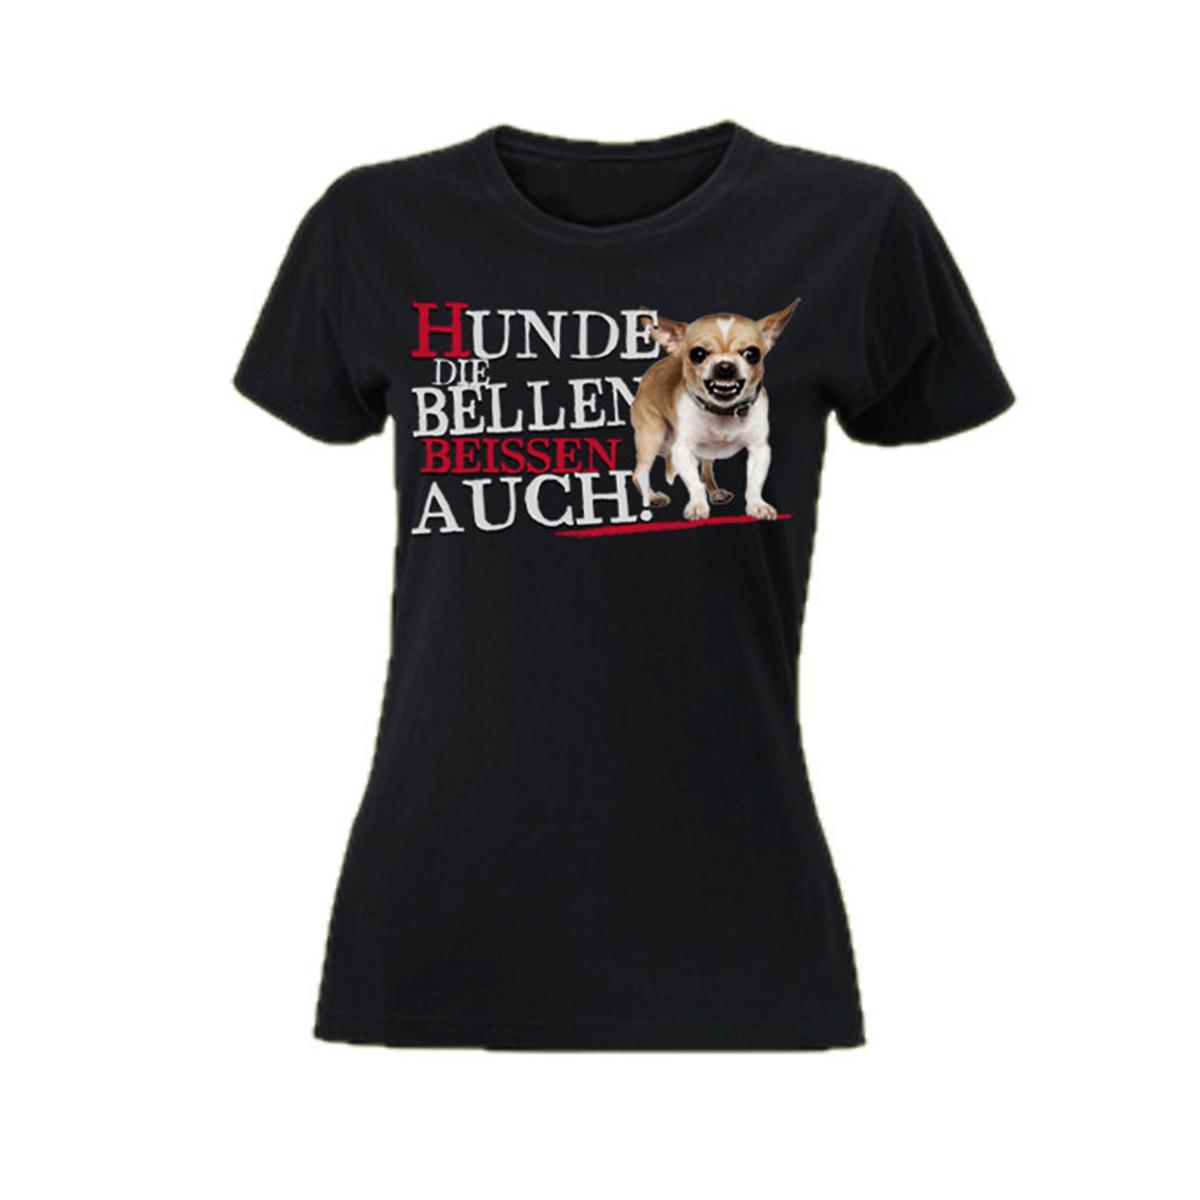 Hunde die bellen beissen auch - Frauen T-Shirt - schwarz